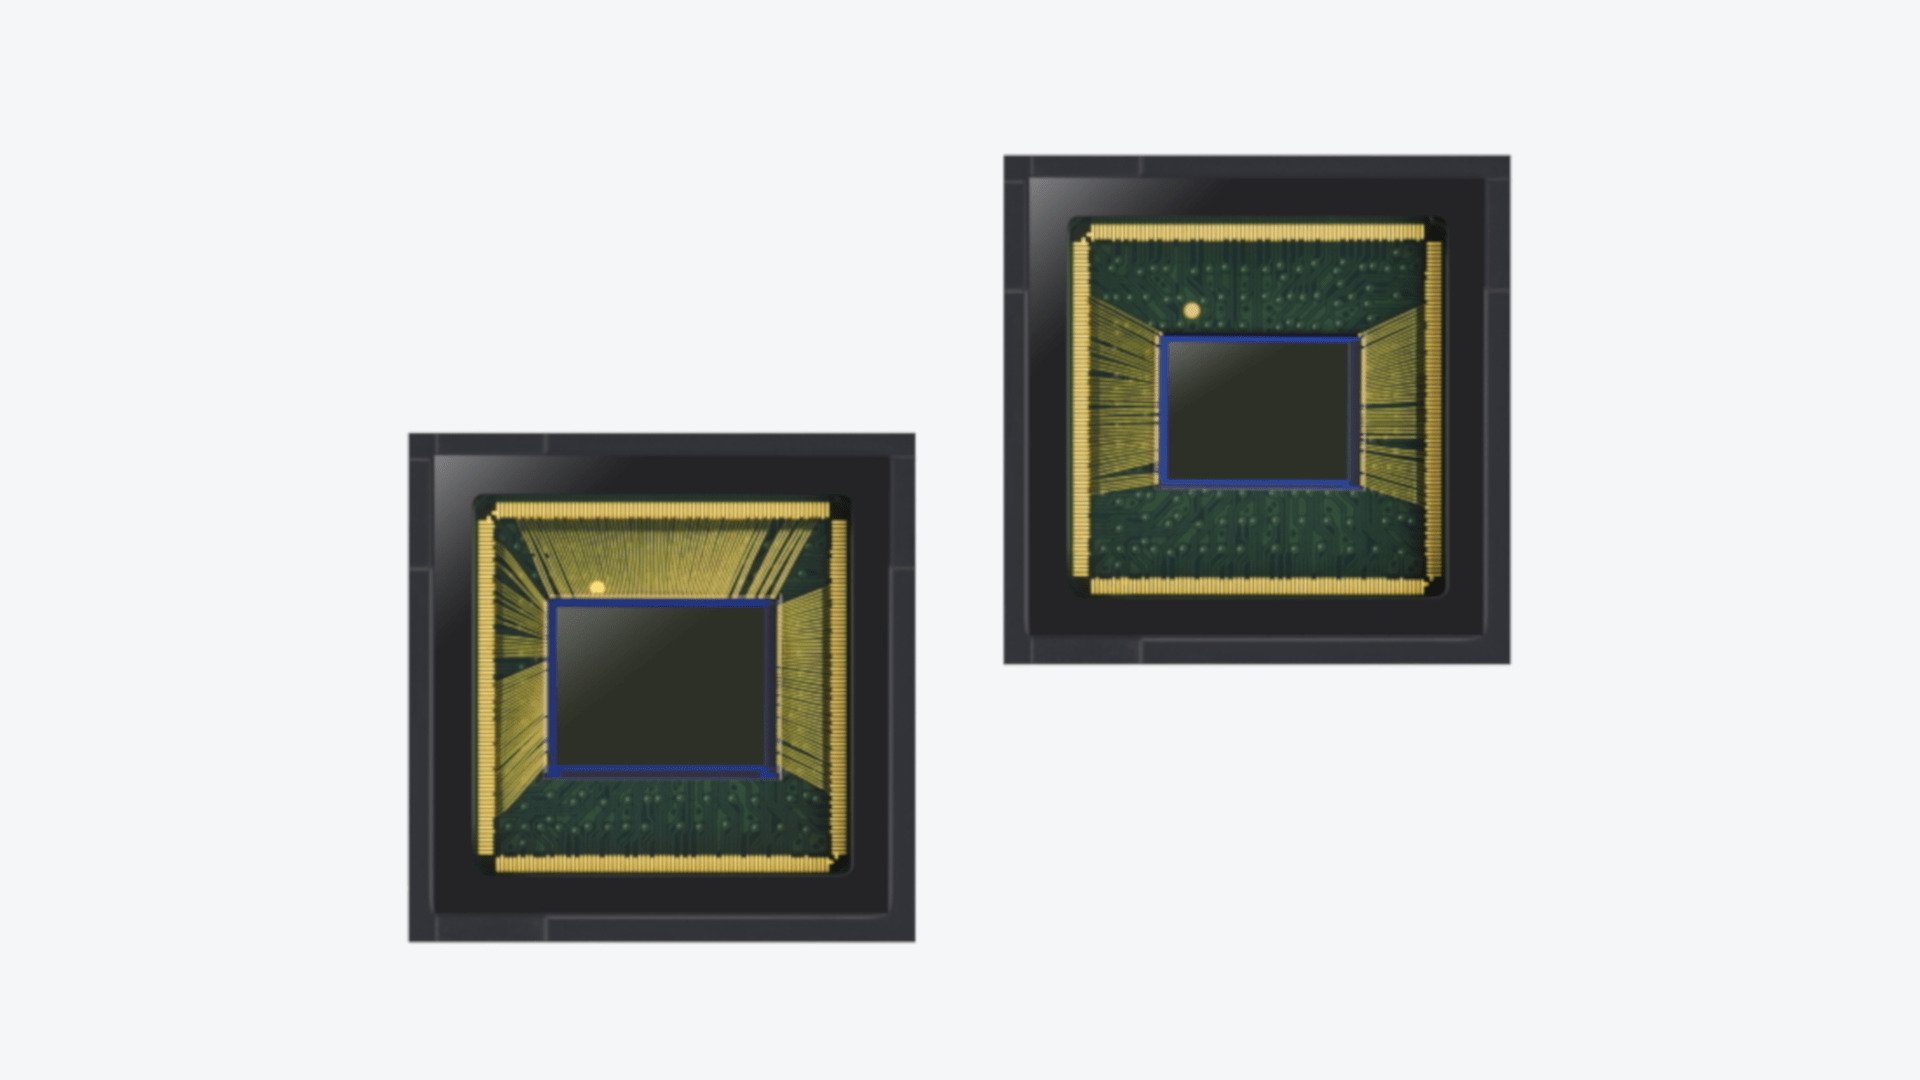 Samsung 64MP and 48MP Image Sensors